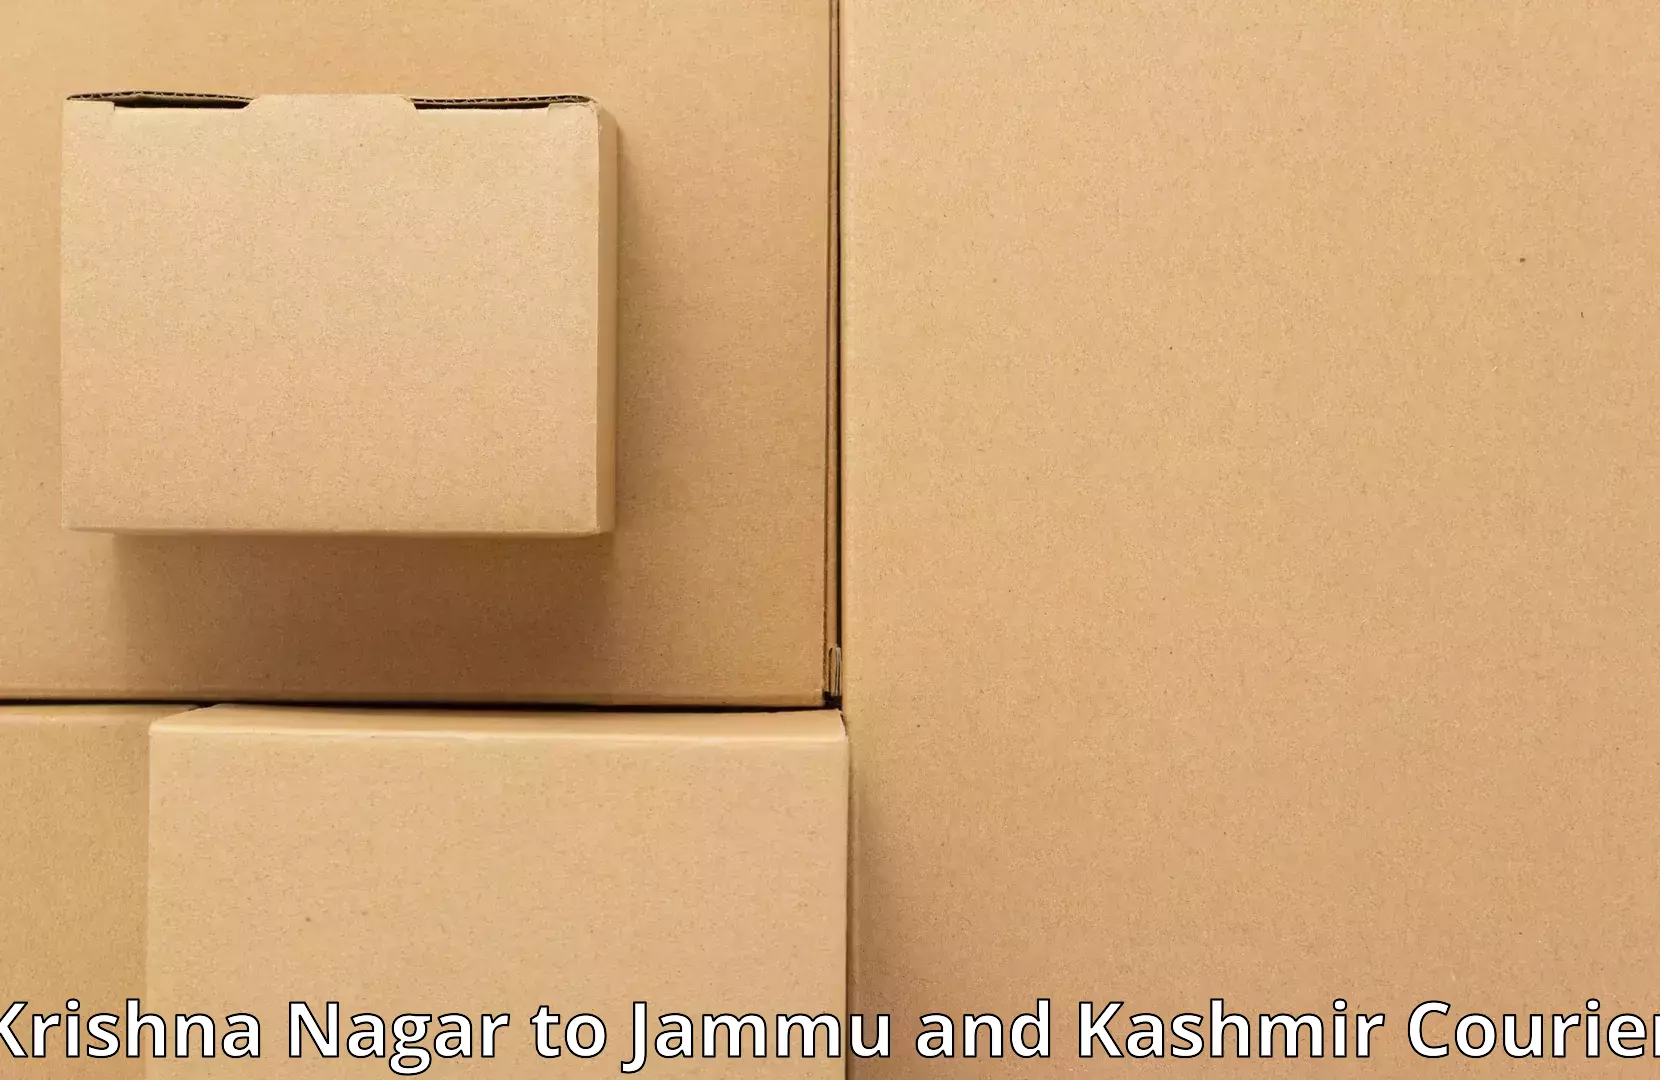 Furniture transport experts Krishna Nagar to Ramban